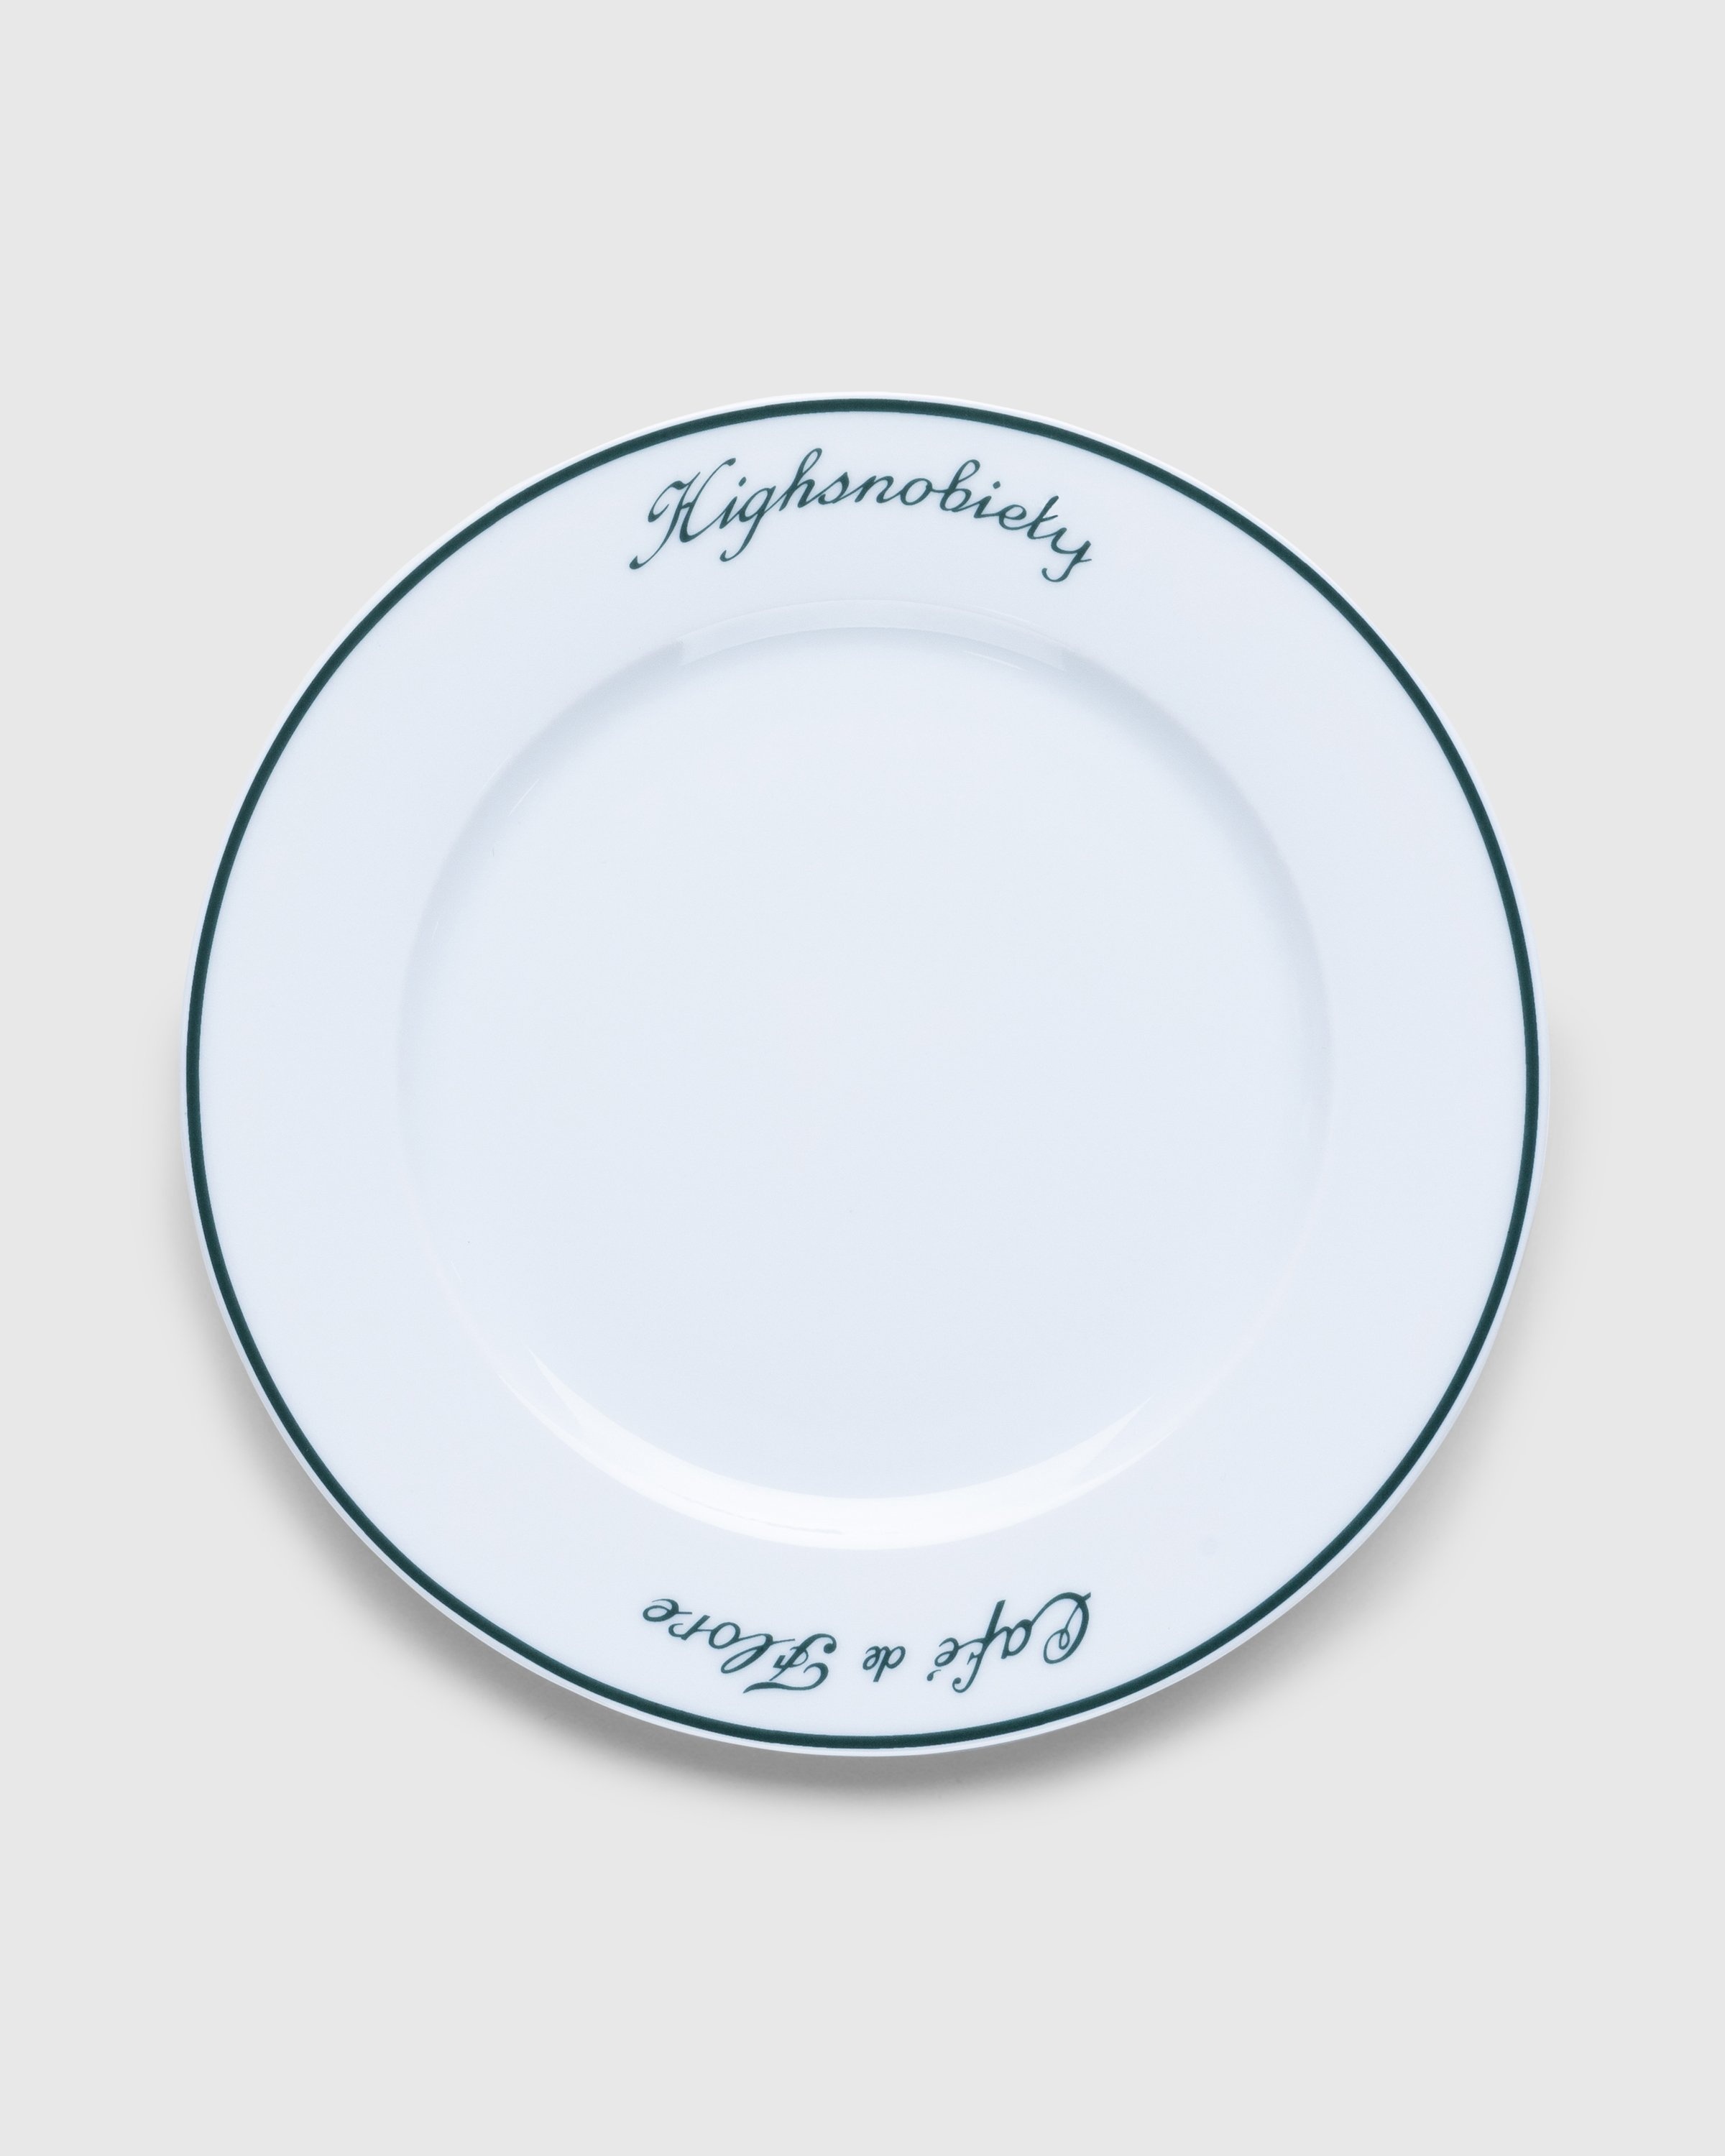 Café de Flore x Highsnobiety – Plate - Ceramics - White - Image 1